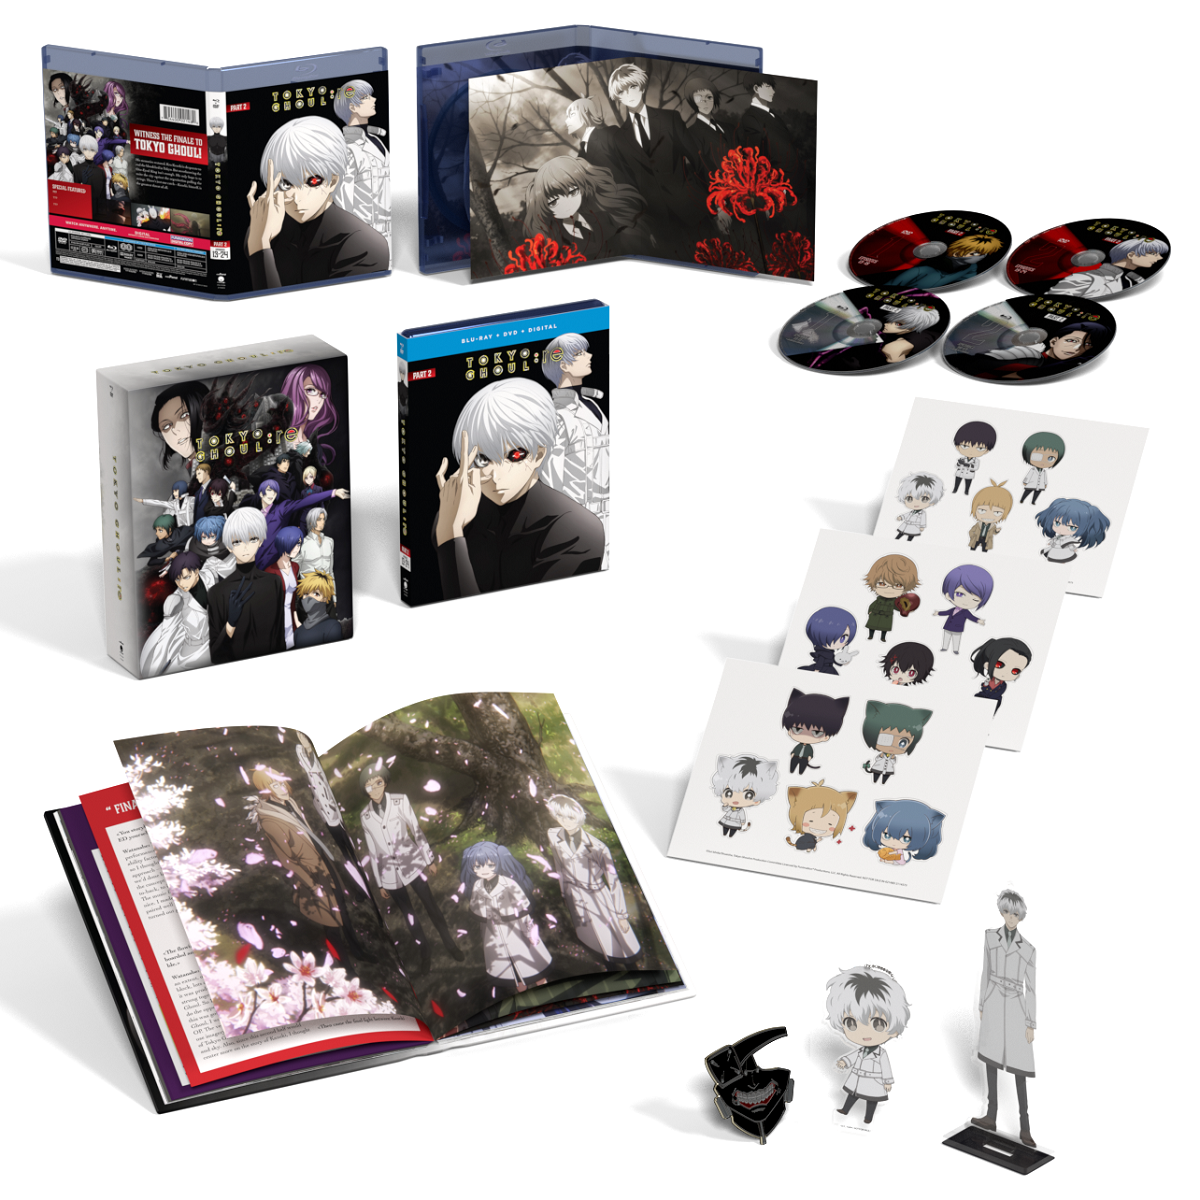 Tokyo Ghoul Temporada 2 Blu-Ray Ed. Coleccionista de segunda mano